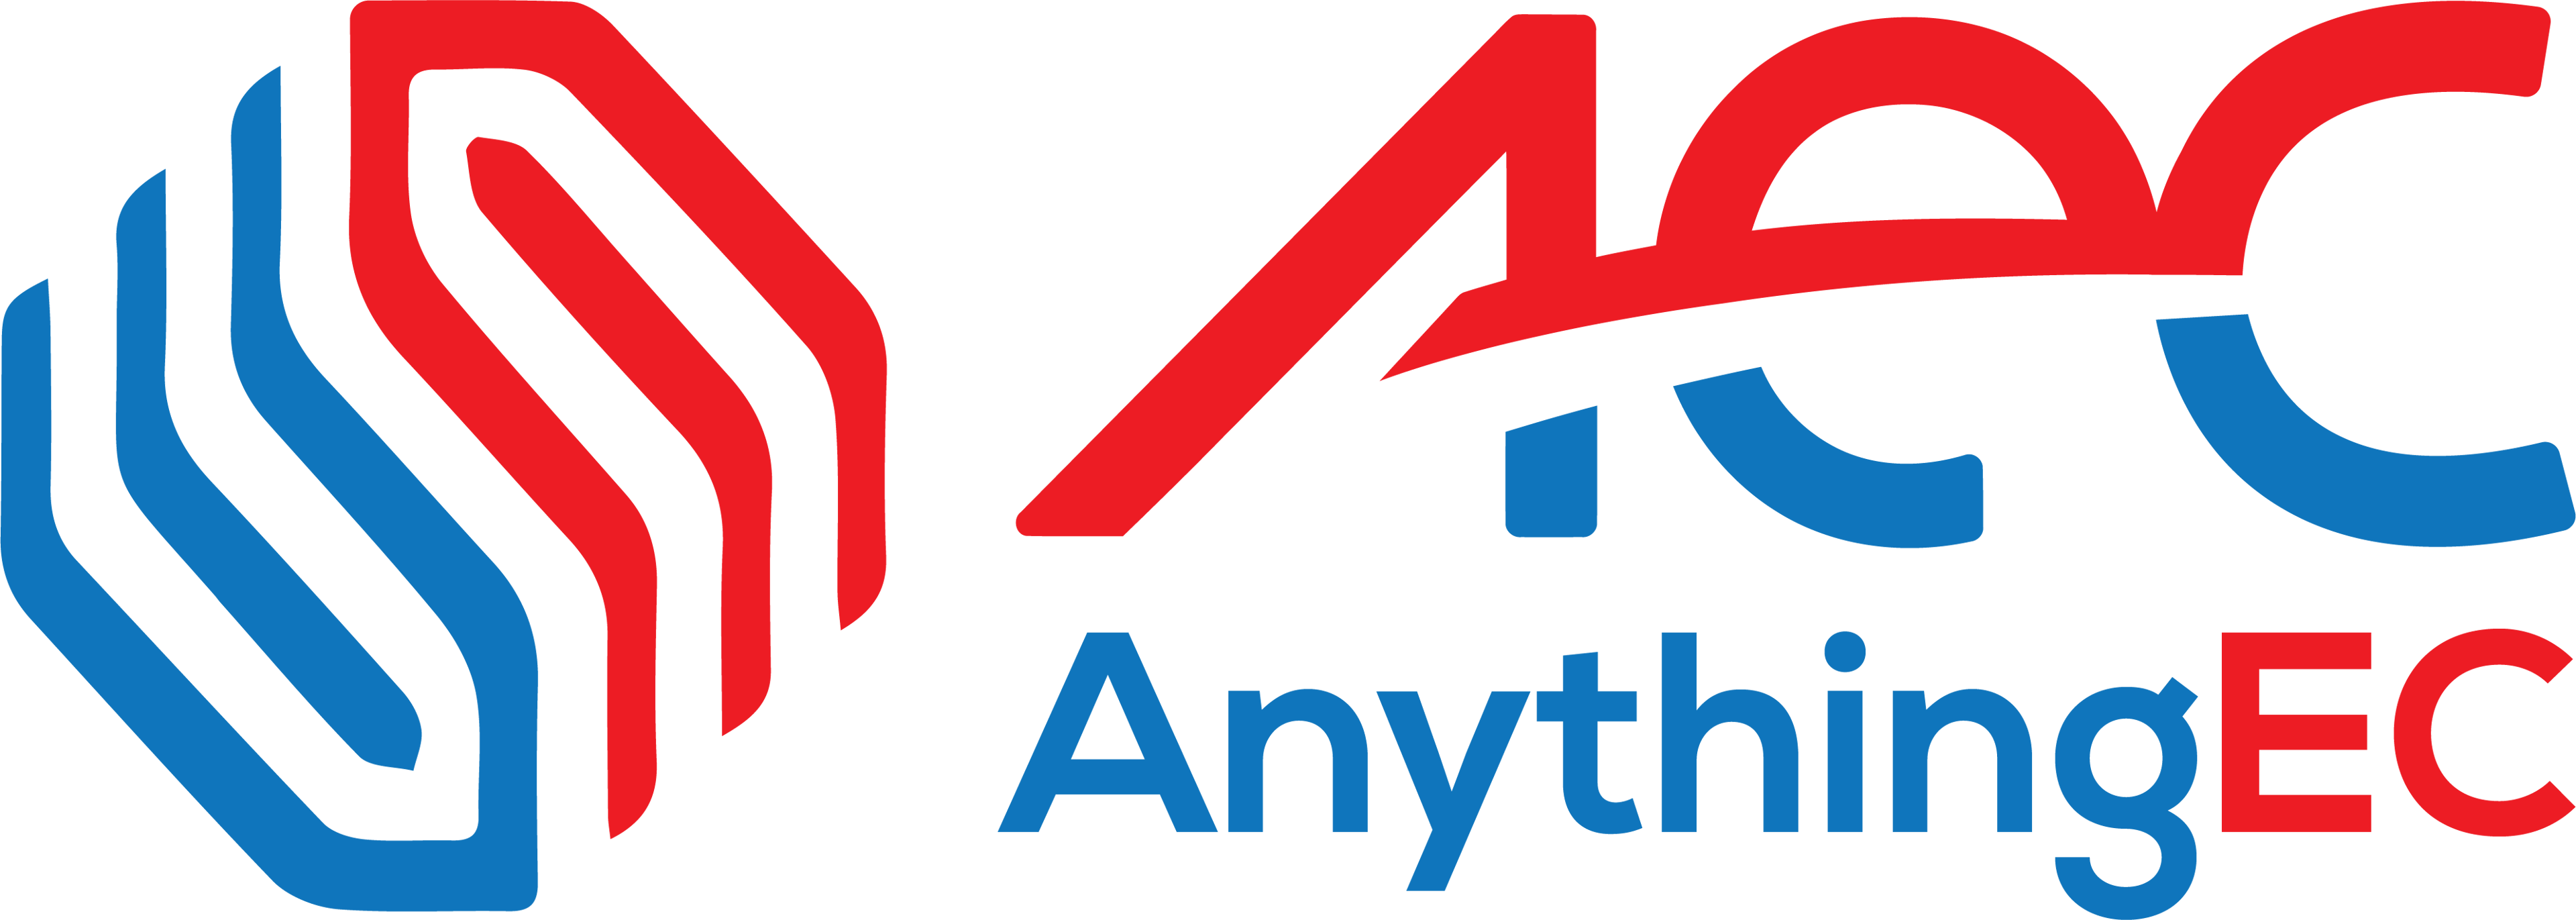 AnythingEC logo